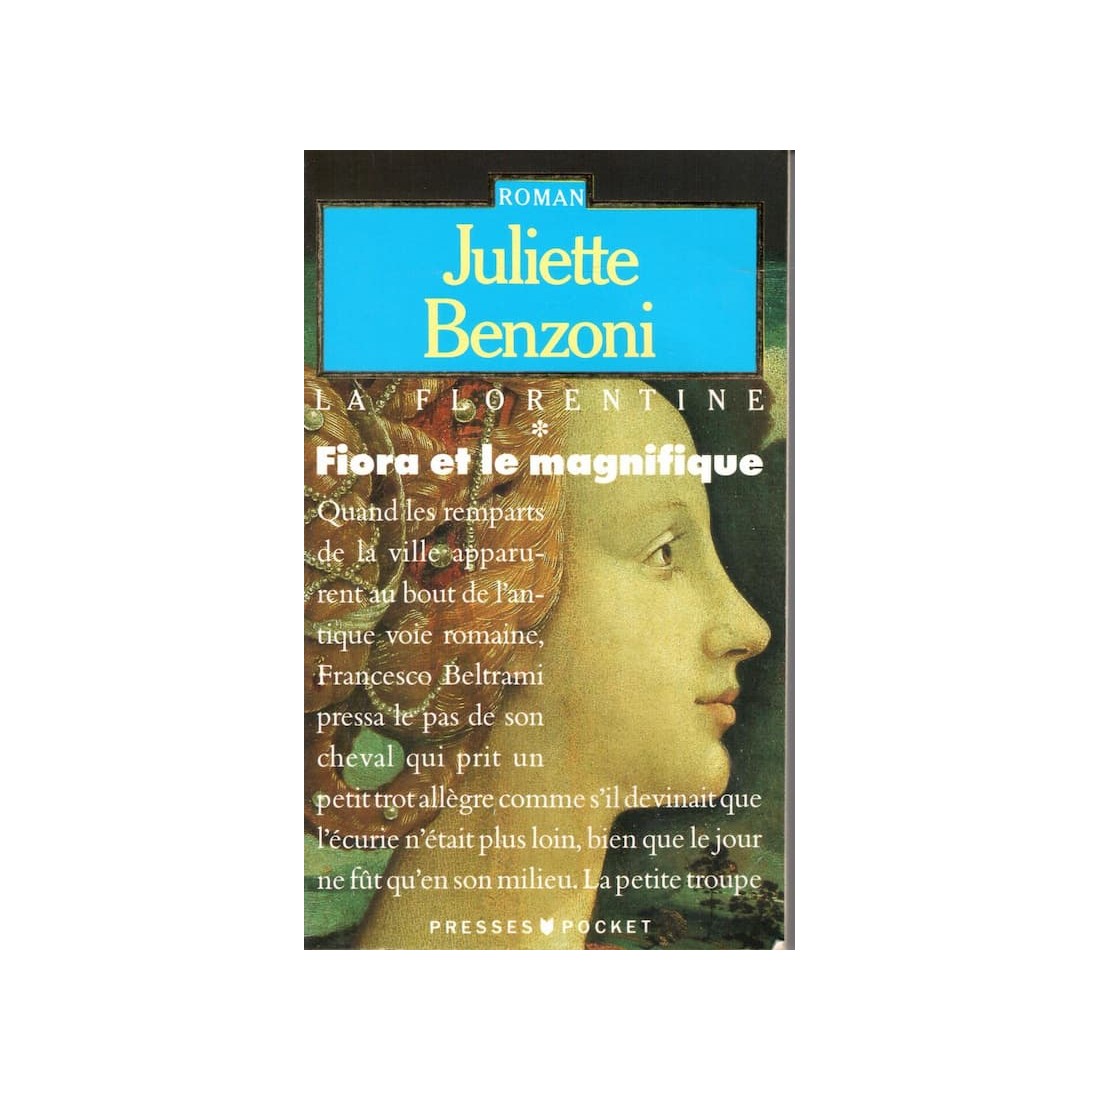 Fiora et le magnifique - Roman de Juliette Benzoni - Ocazlivres.com